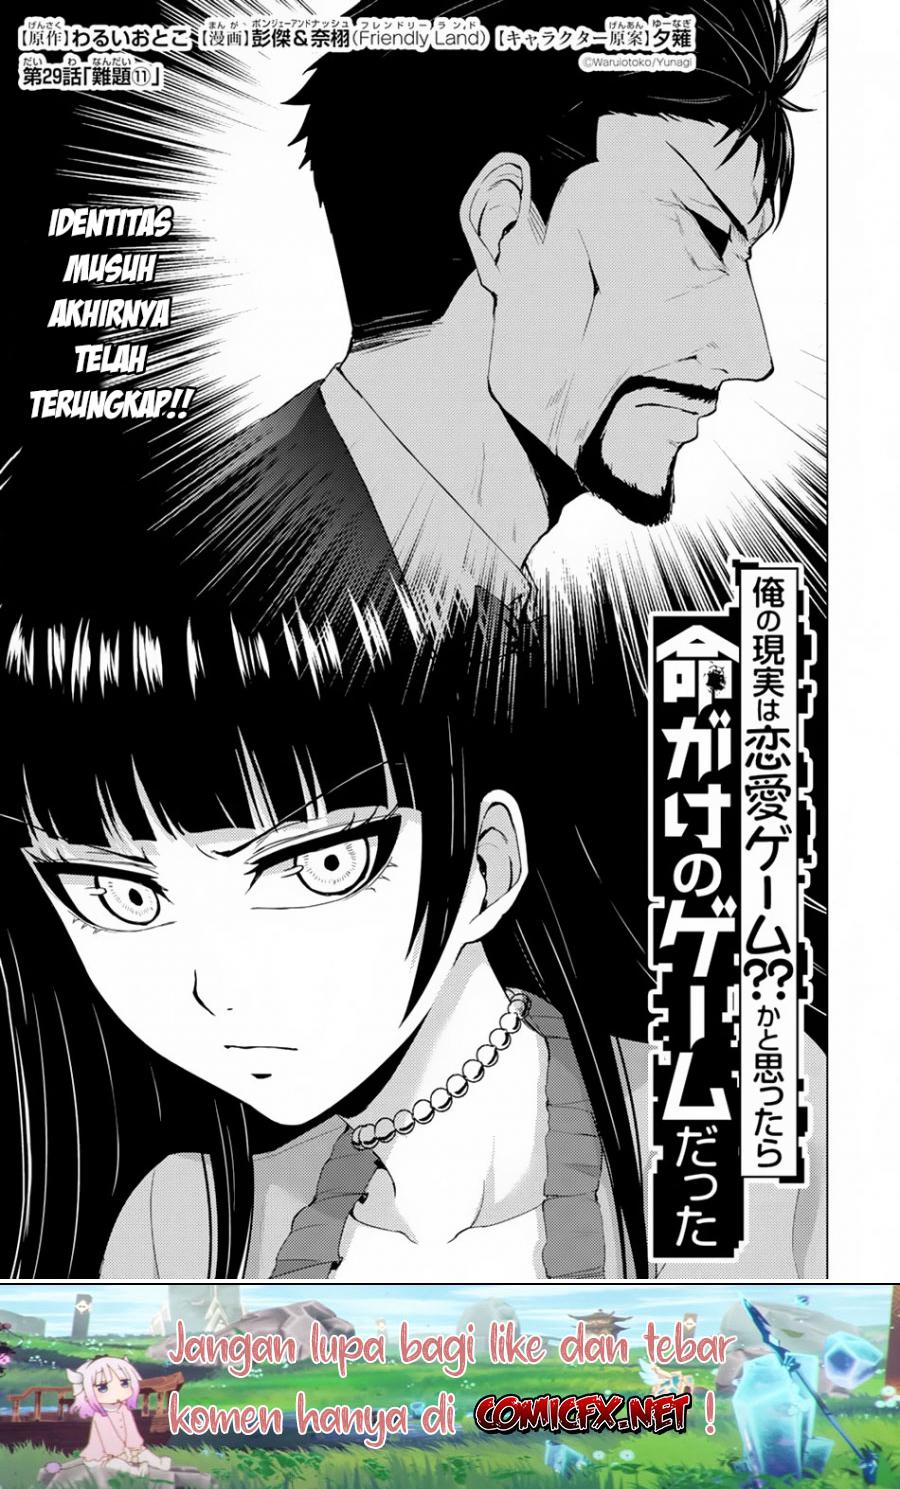 Ore no Genjitsu wa Renai Game?? ka to Omottara Inochigake no Game datta Chapter 29.1